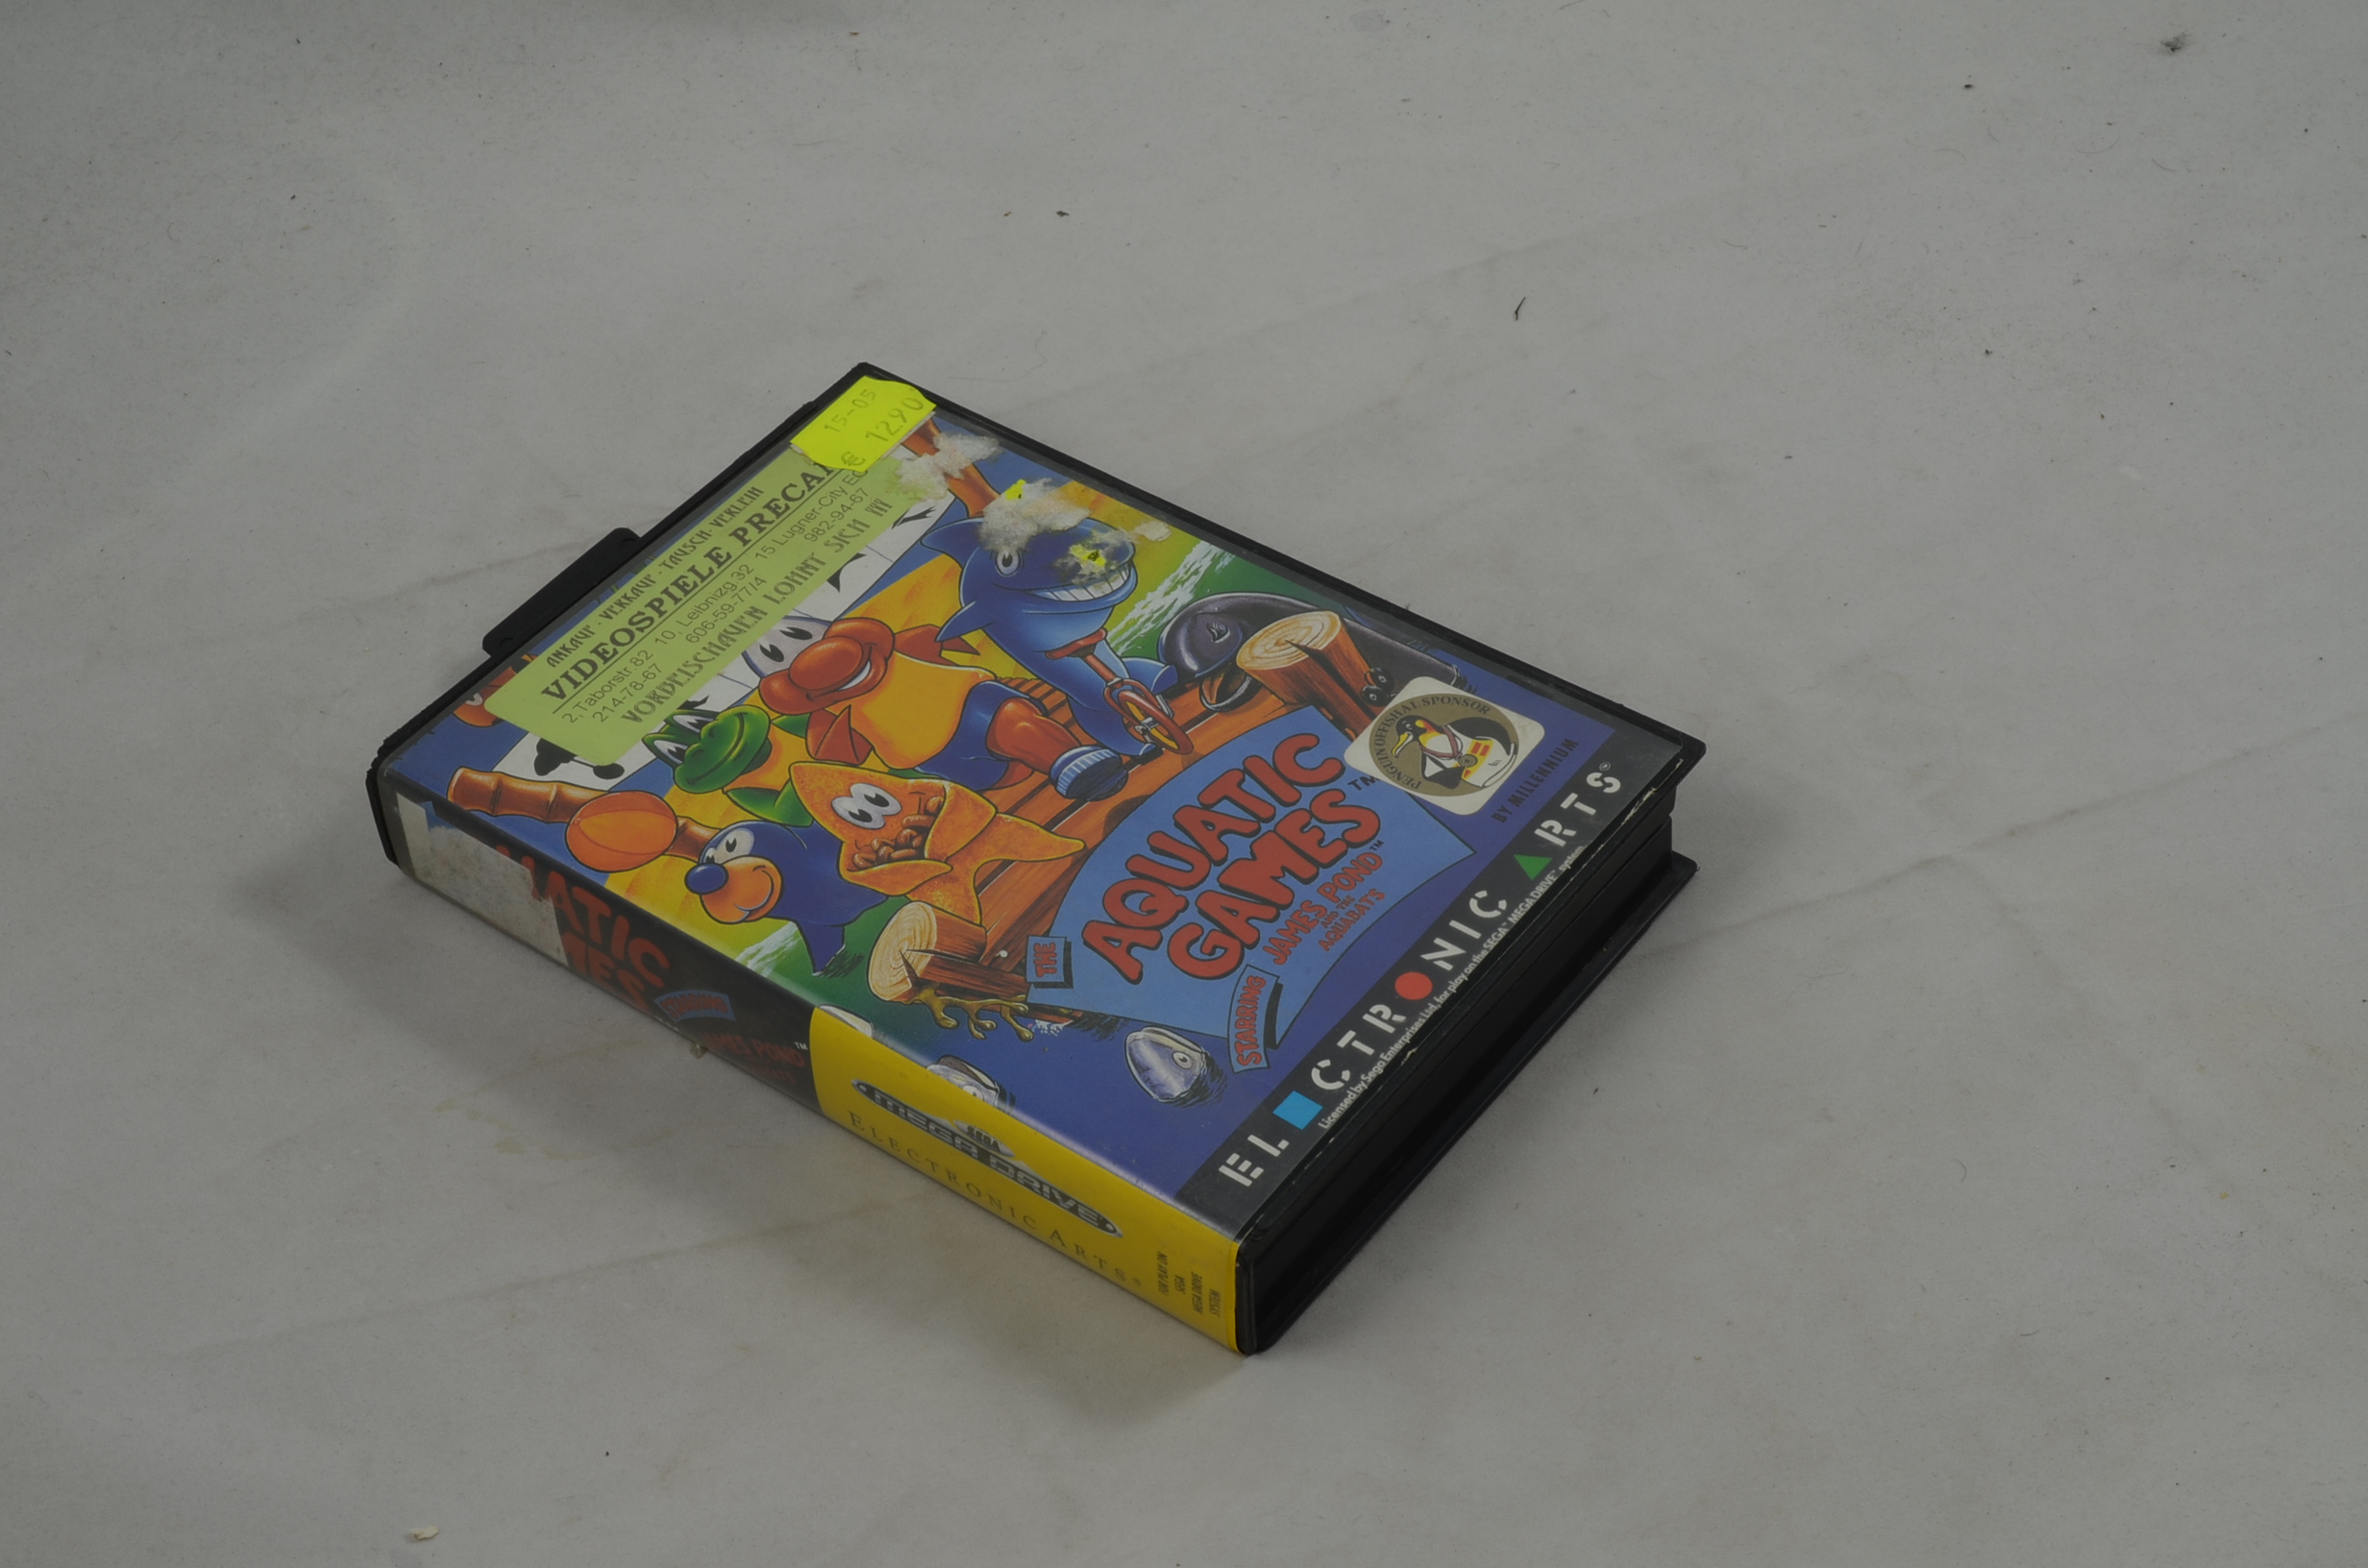 Produktbild von Aquatic Games Sega Mega Drive Spiel CIB (gut)